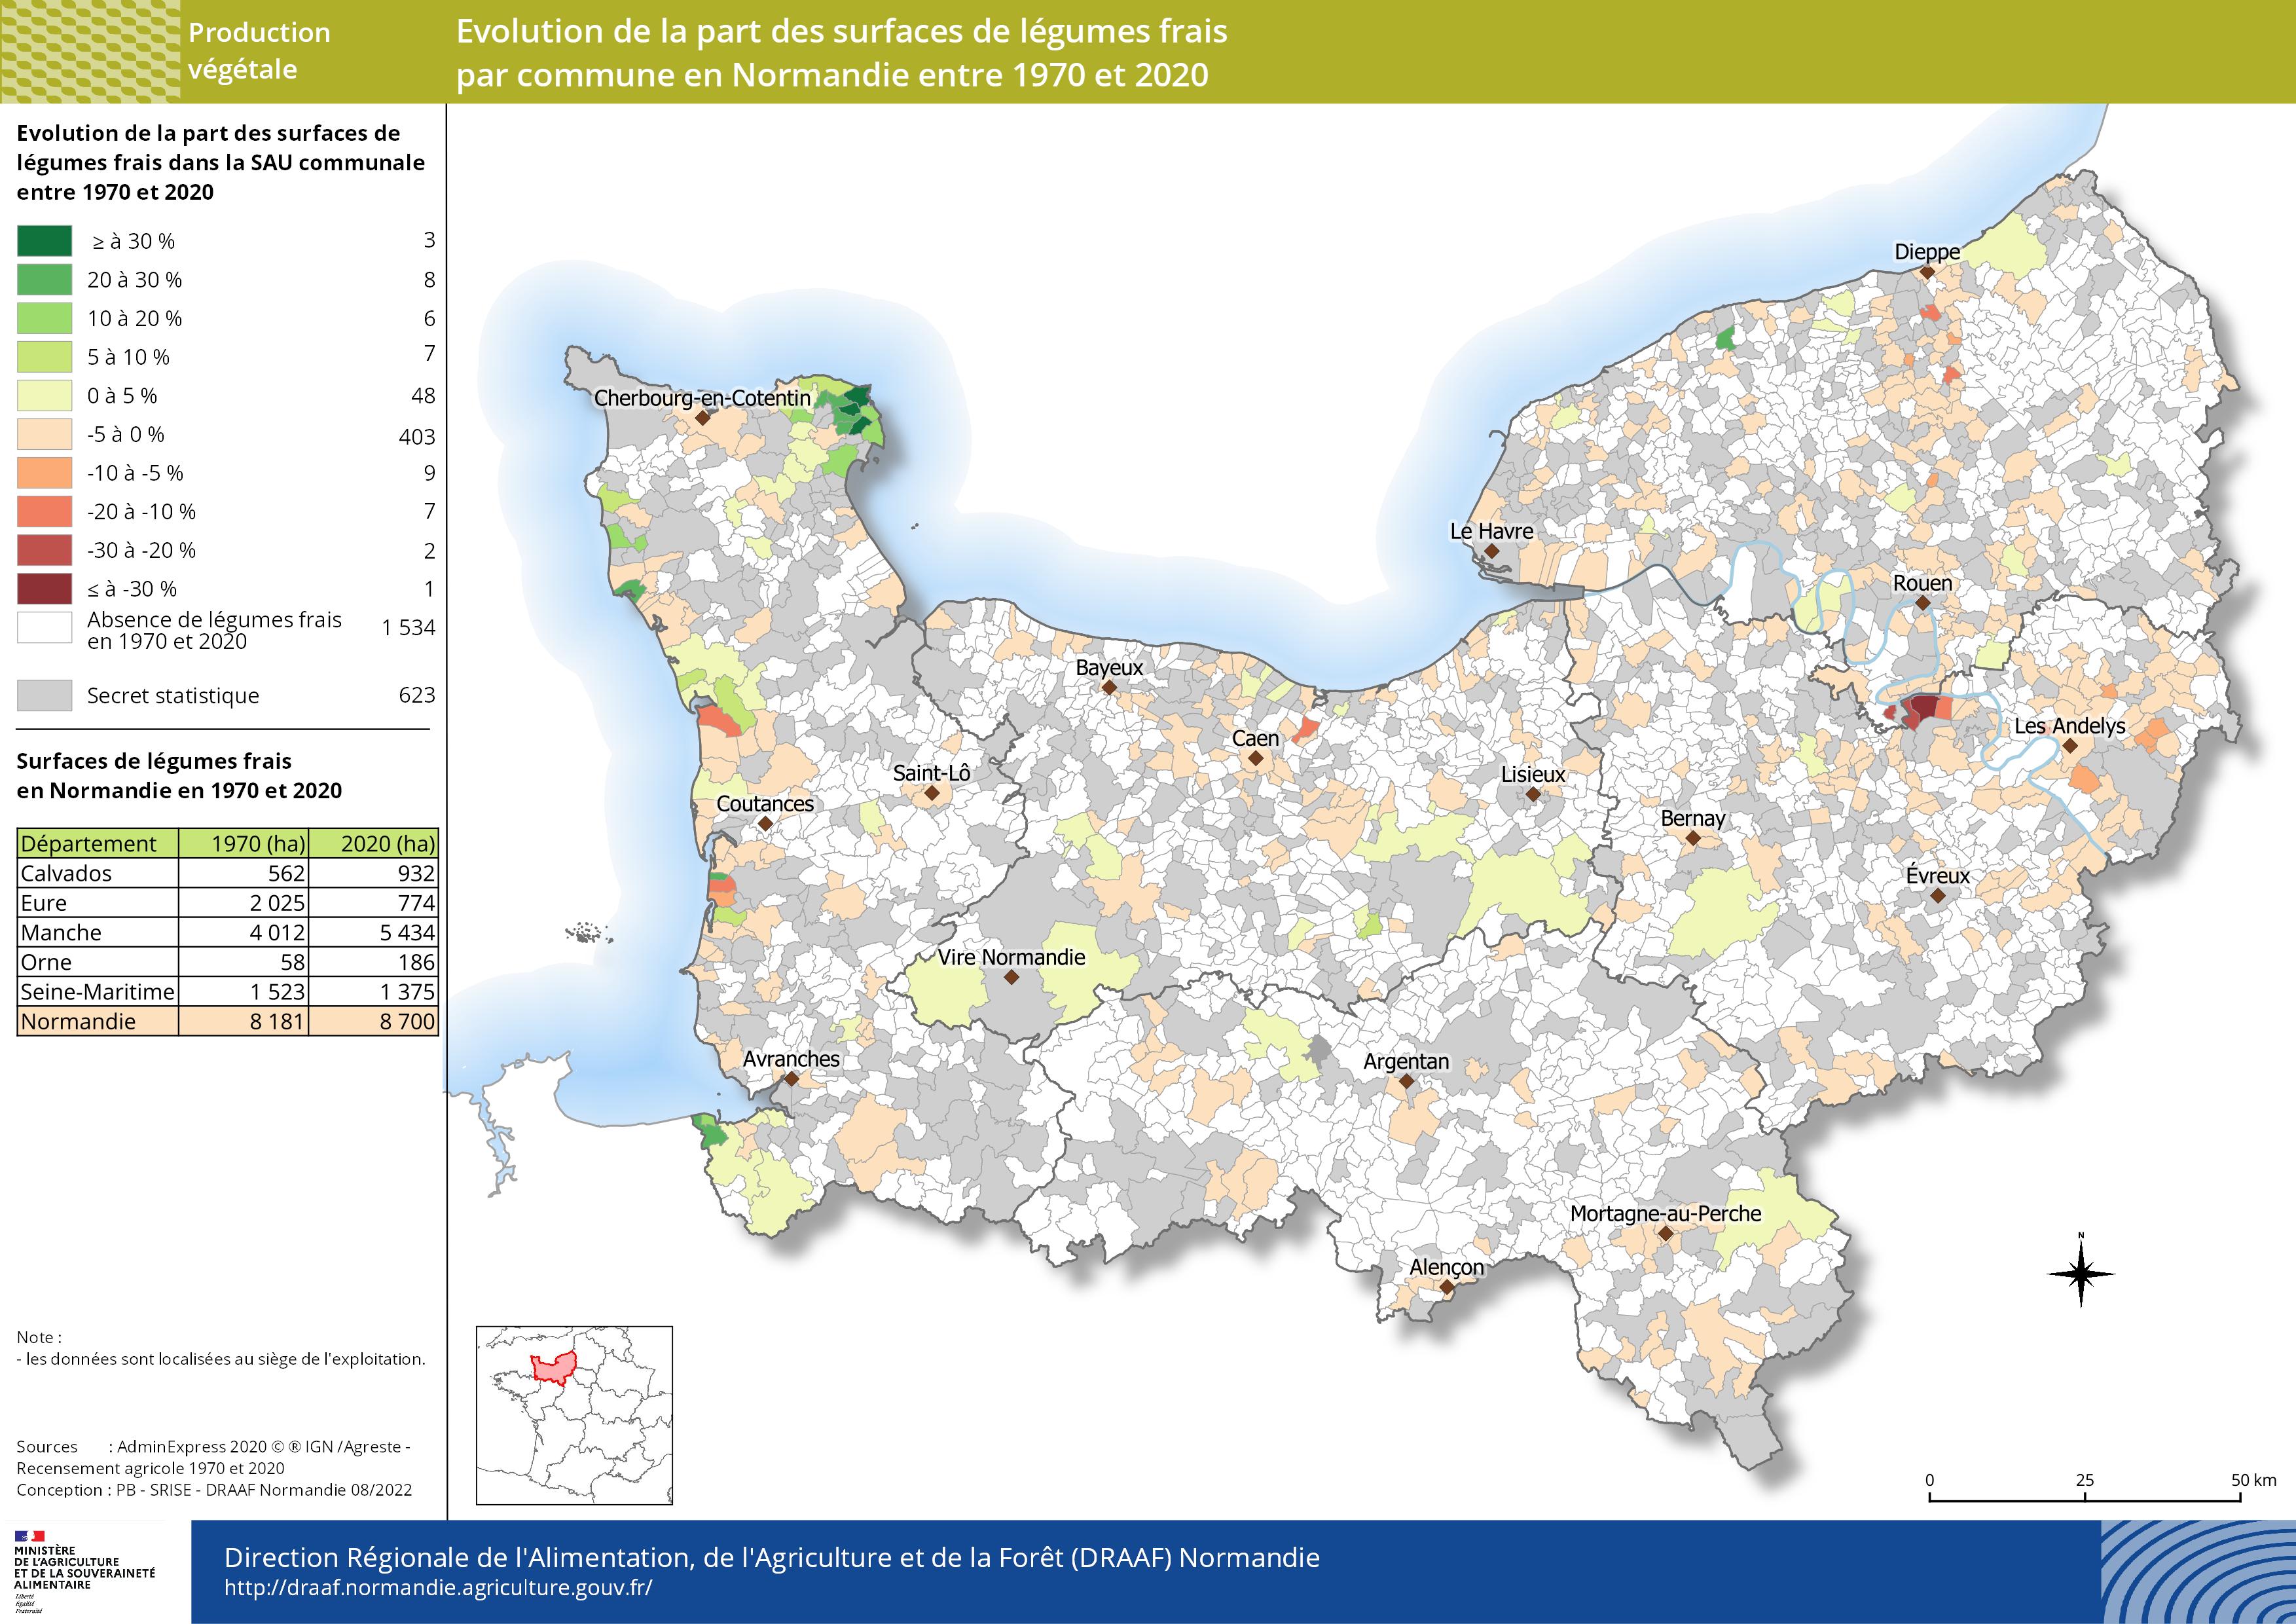 carte représentant l'évolution de la part des surfaces de légumes frais par commune en Normandie entre 1970 et 2020